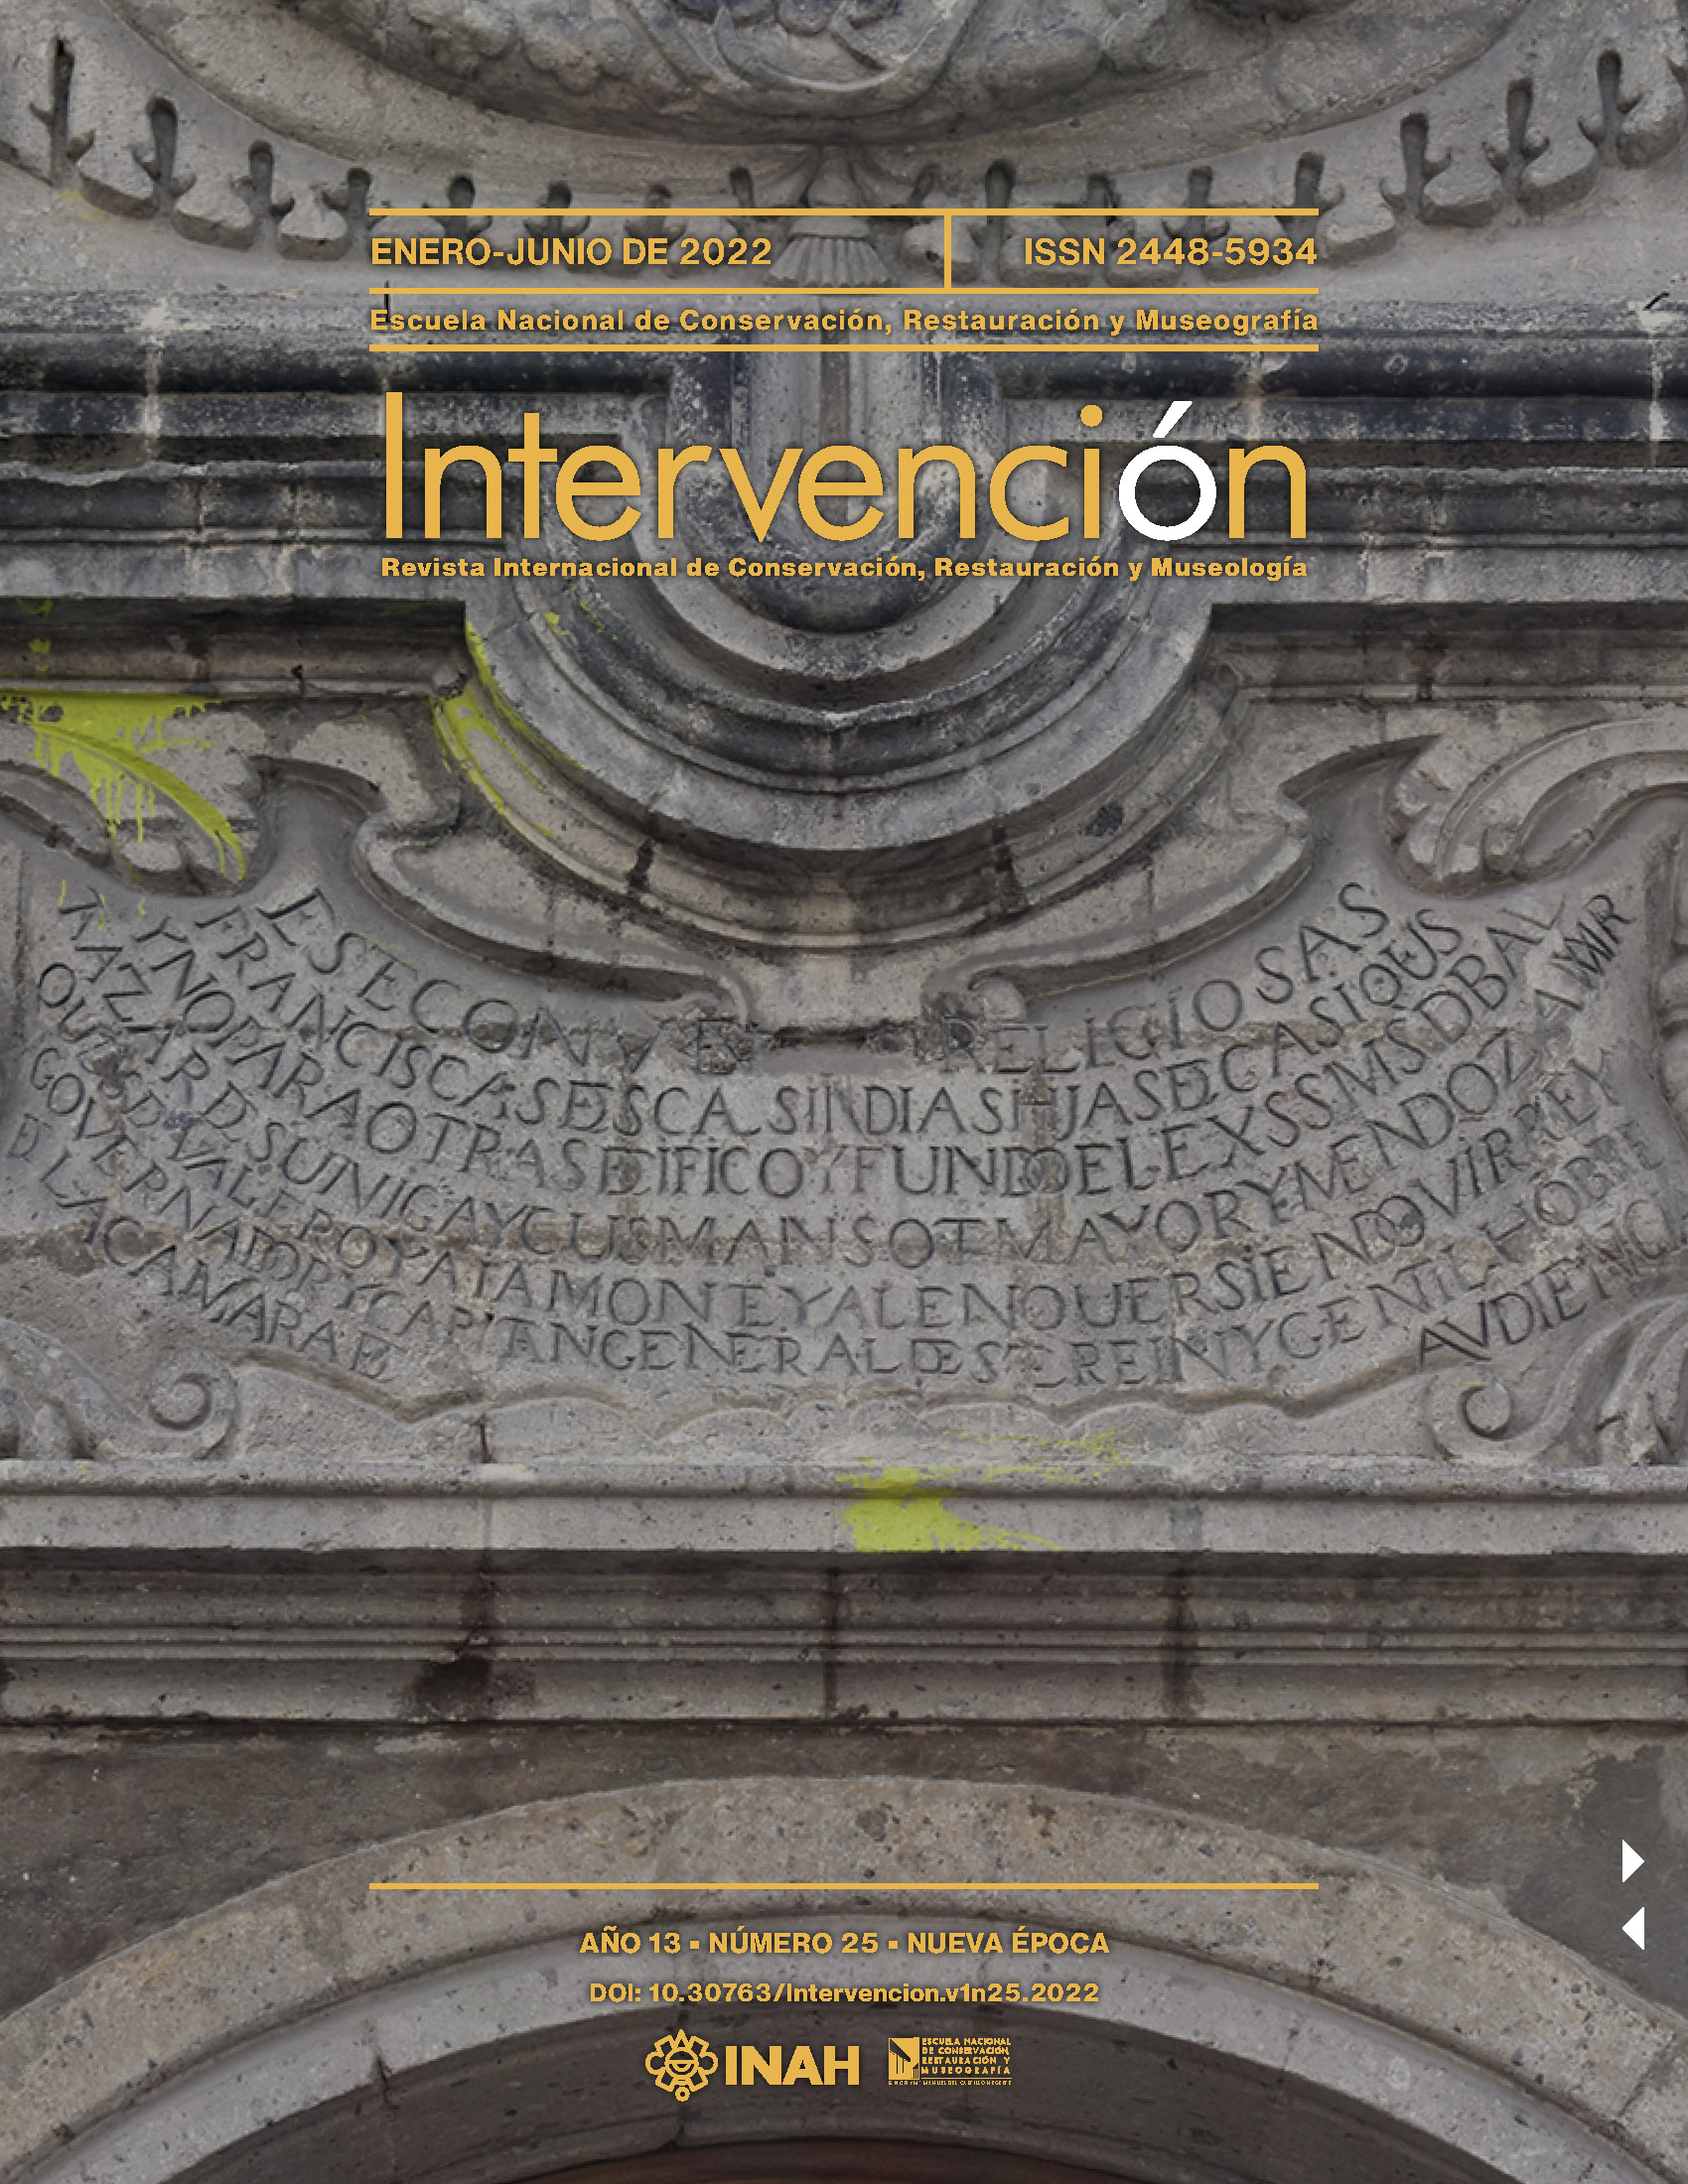 Detalle de la inscripción que advierte en la portada del templo de la exclusividad indígena del convento de Corpus Christi (Fotografía: Raúl Santos; octubre de 2022).